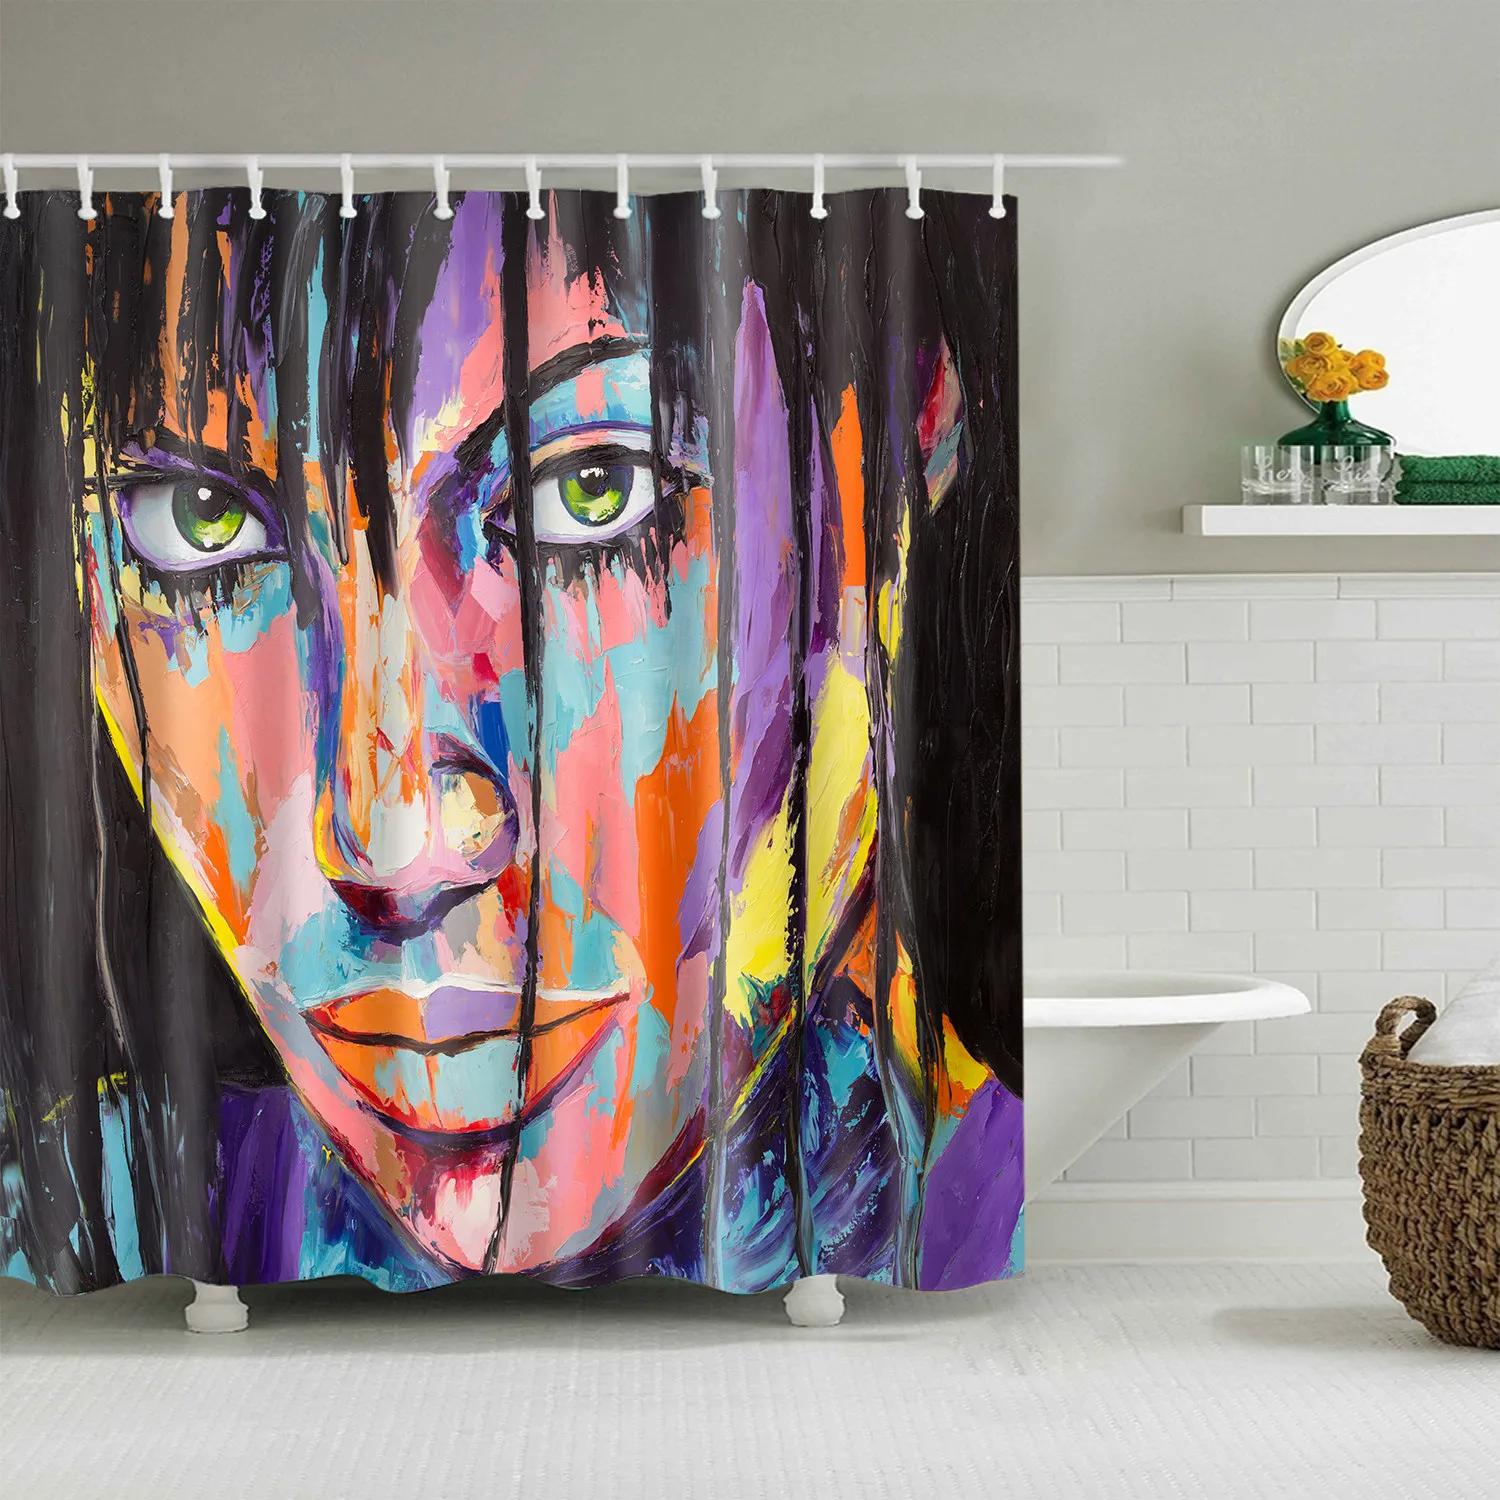 Африканская занавеска для ванной s для ванной, водонепроницаемая полиэфирная портретная масляная живопись, занавеска для душа, большая занавеска 180x180 см, занавеска для ванной - Цвет: C